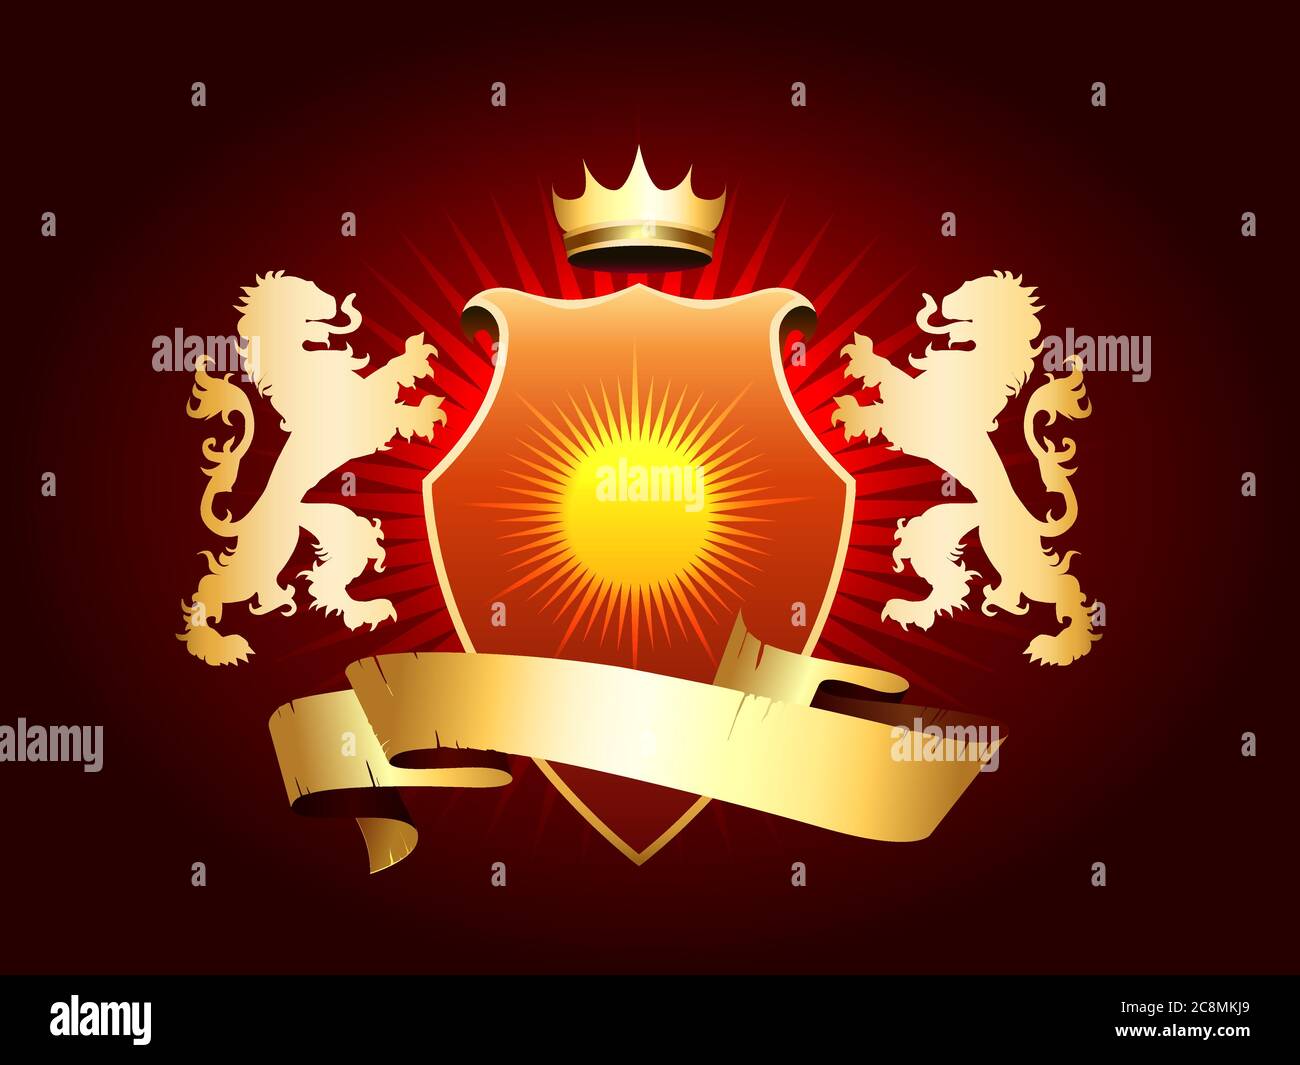 Stemma araldico con corona, scudo, nastro e leoni dorati. Illustrazione vettoriale. Illustrazione Vettoriale